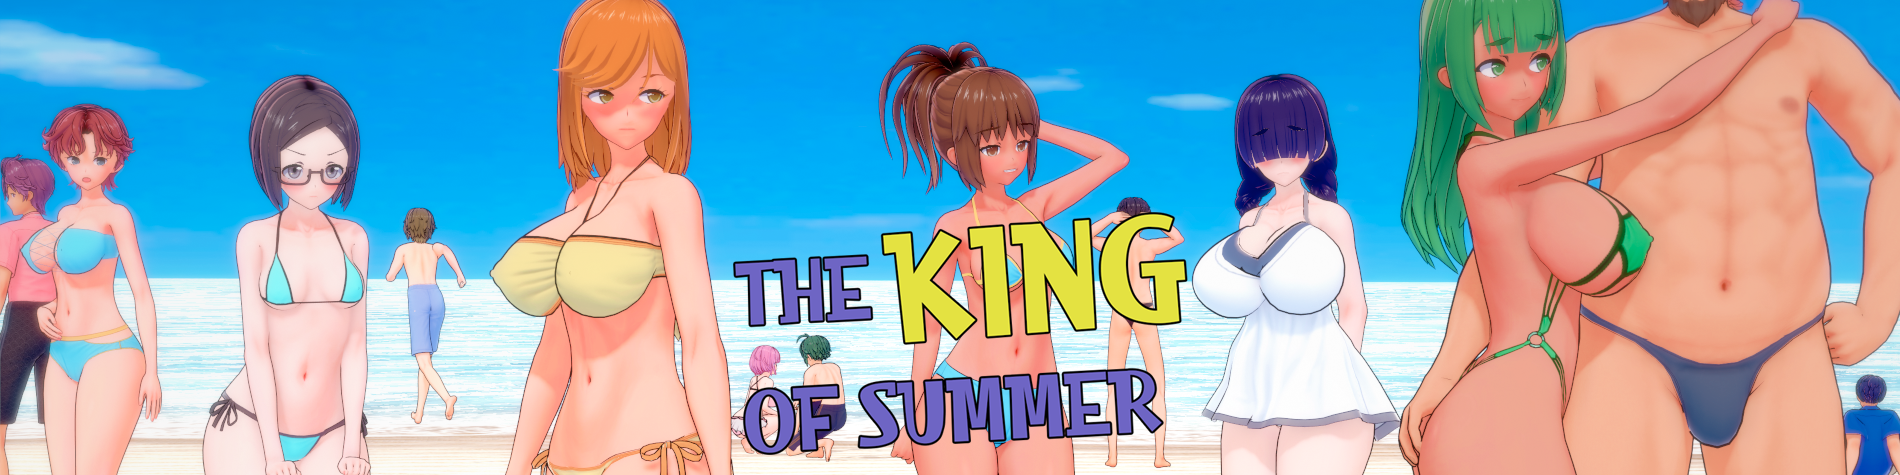 [18+ EN] The King of Summer (v0.4.11 full) – NTR Trong Kỳ Nghỉ Hè Với Mấy Em Gái Xinh Đẹp | Android, PC